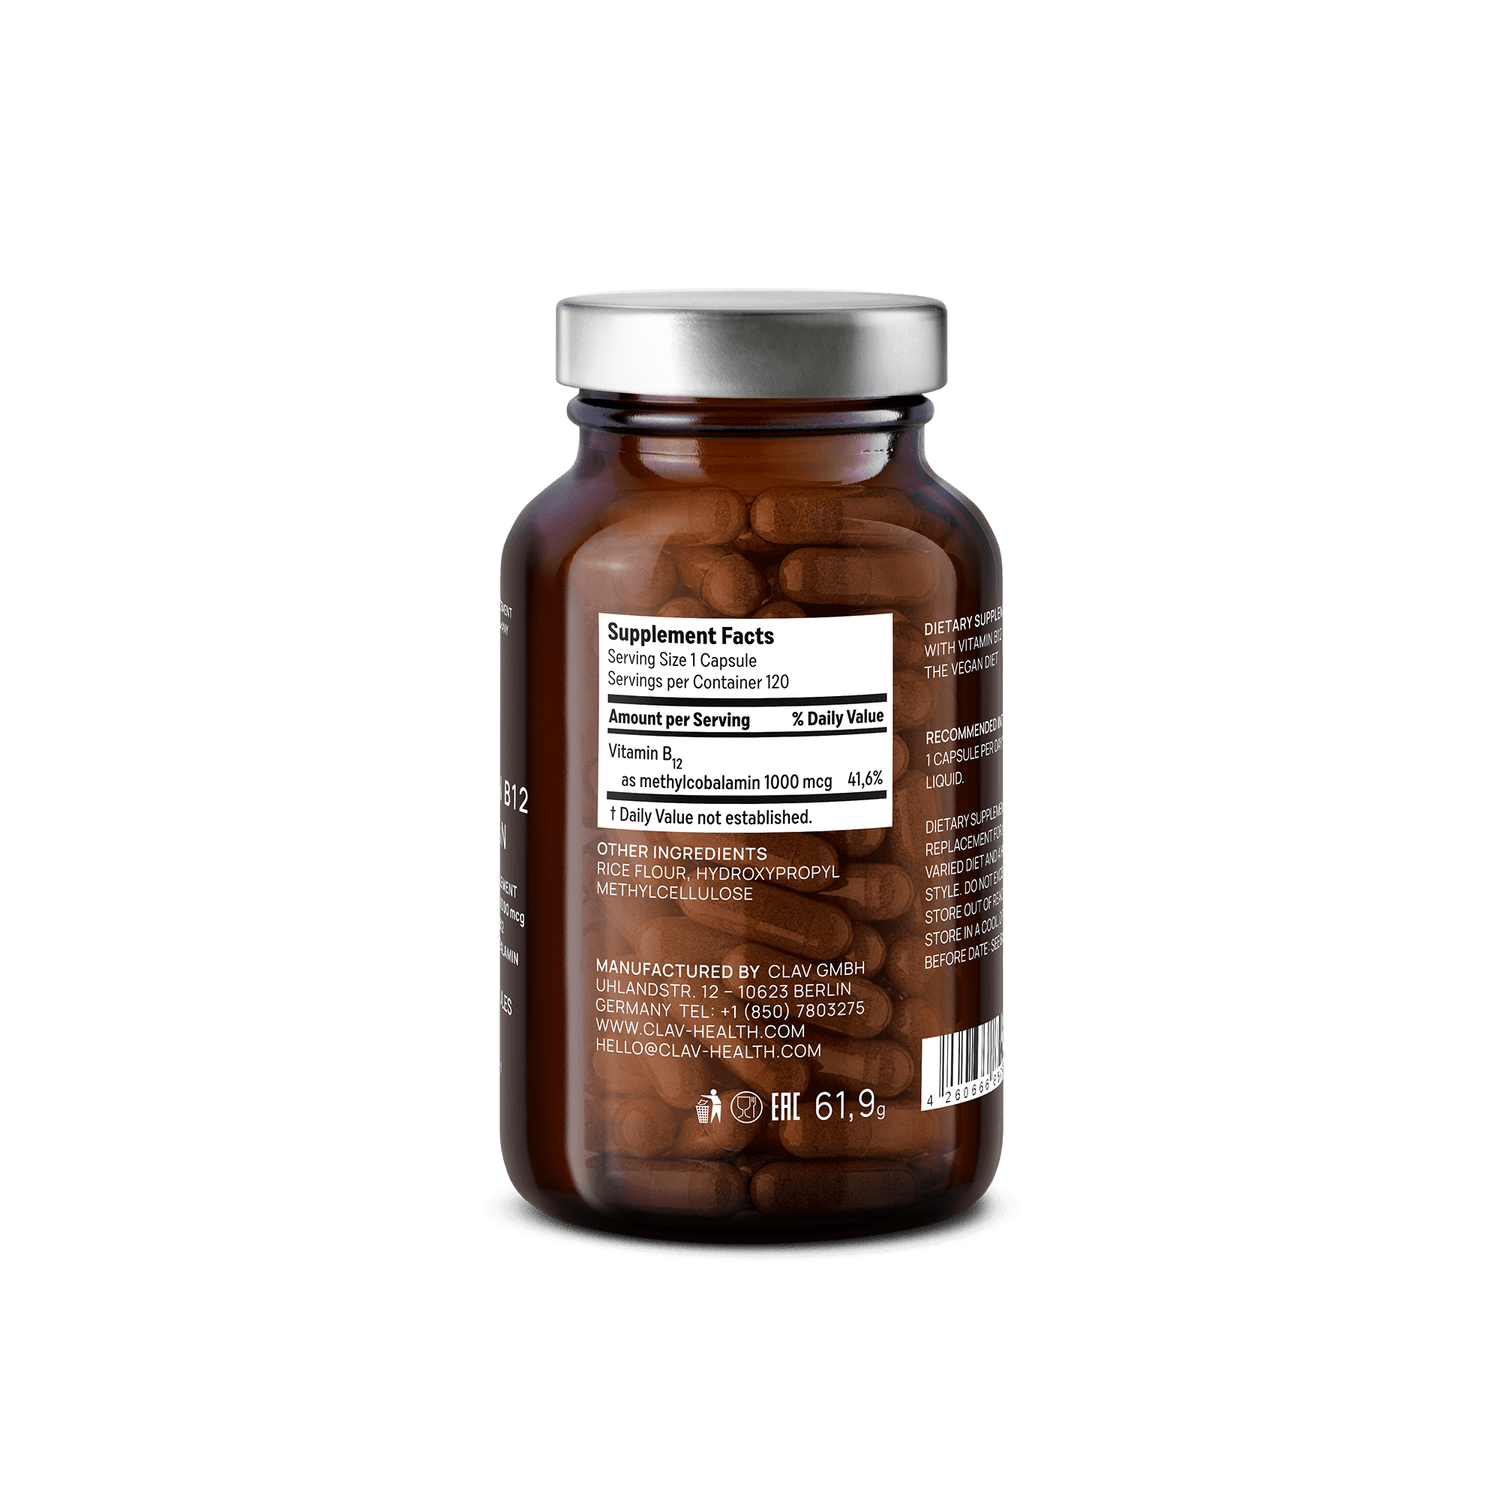 Vitamin B12 1000mcg Methylcobalamin Supplement Ingredients